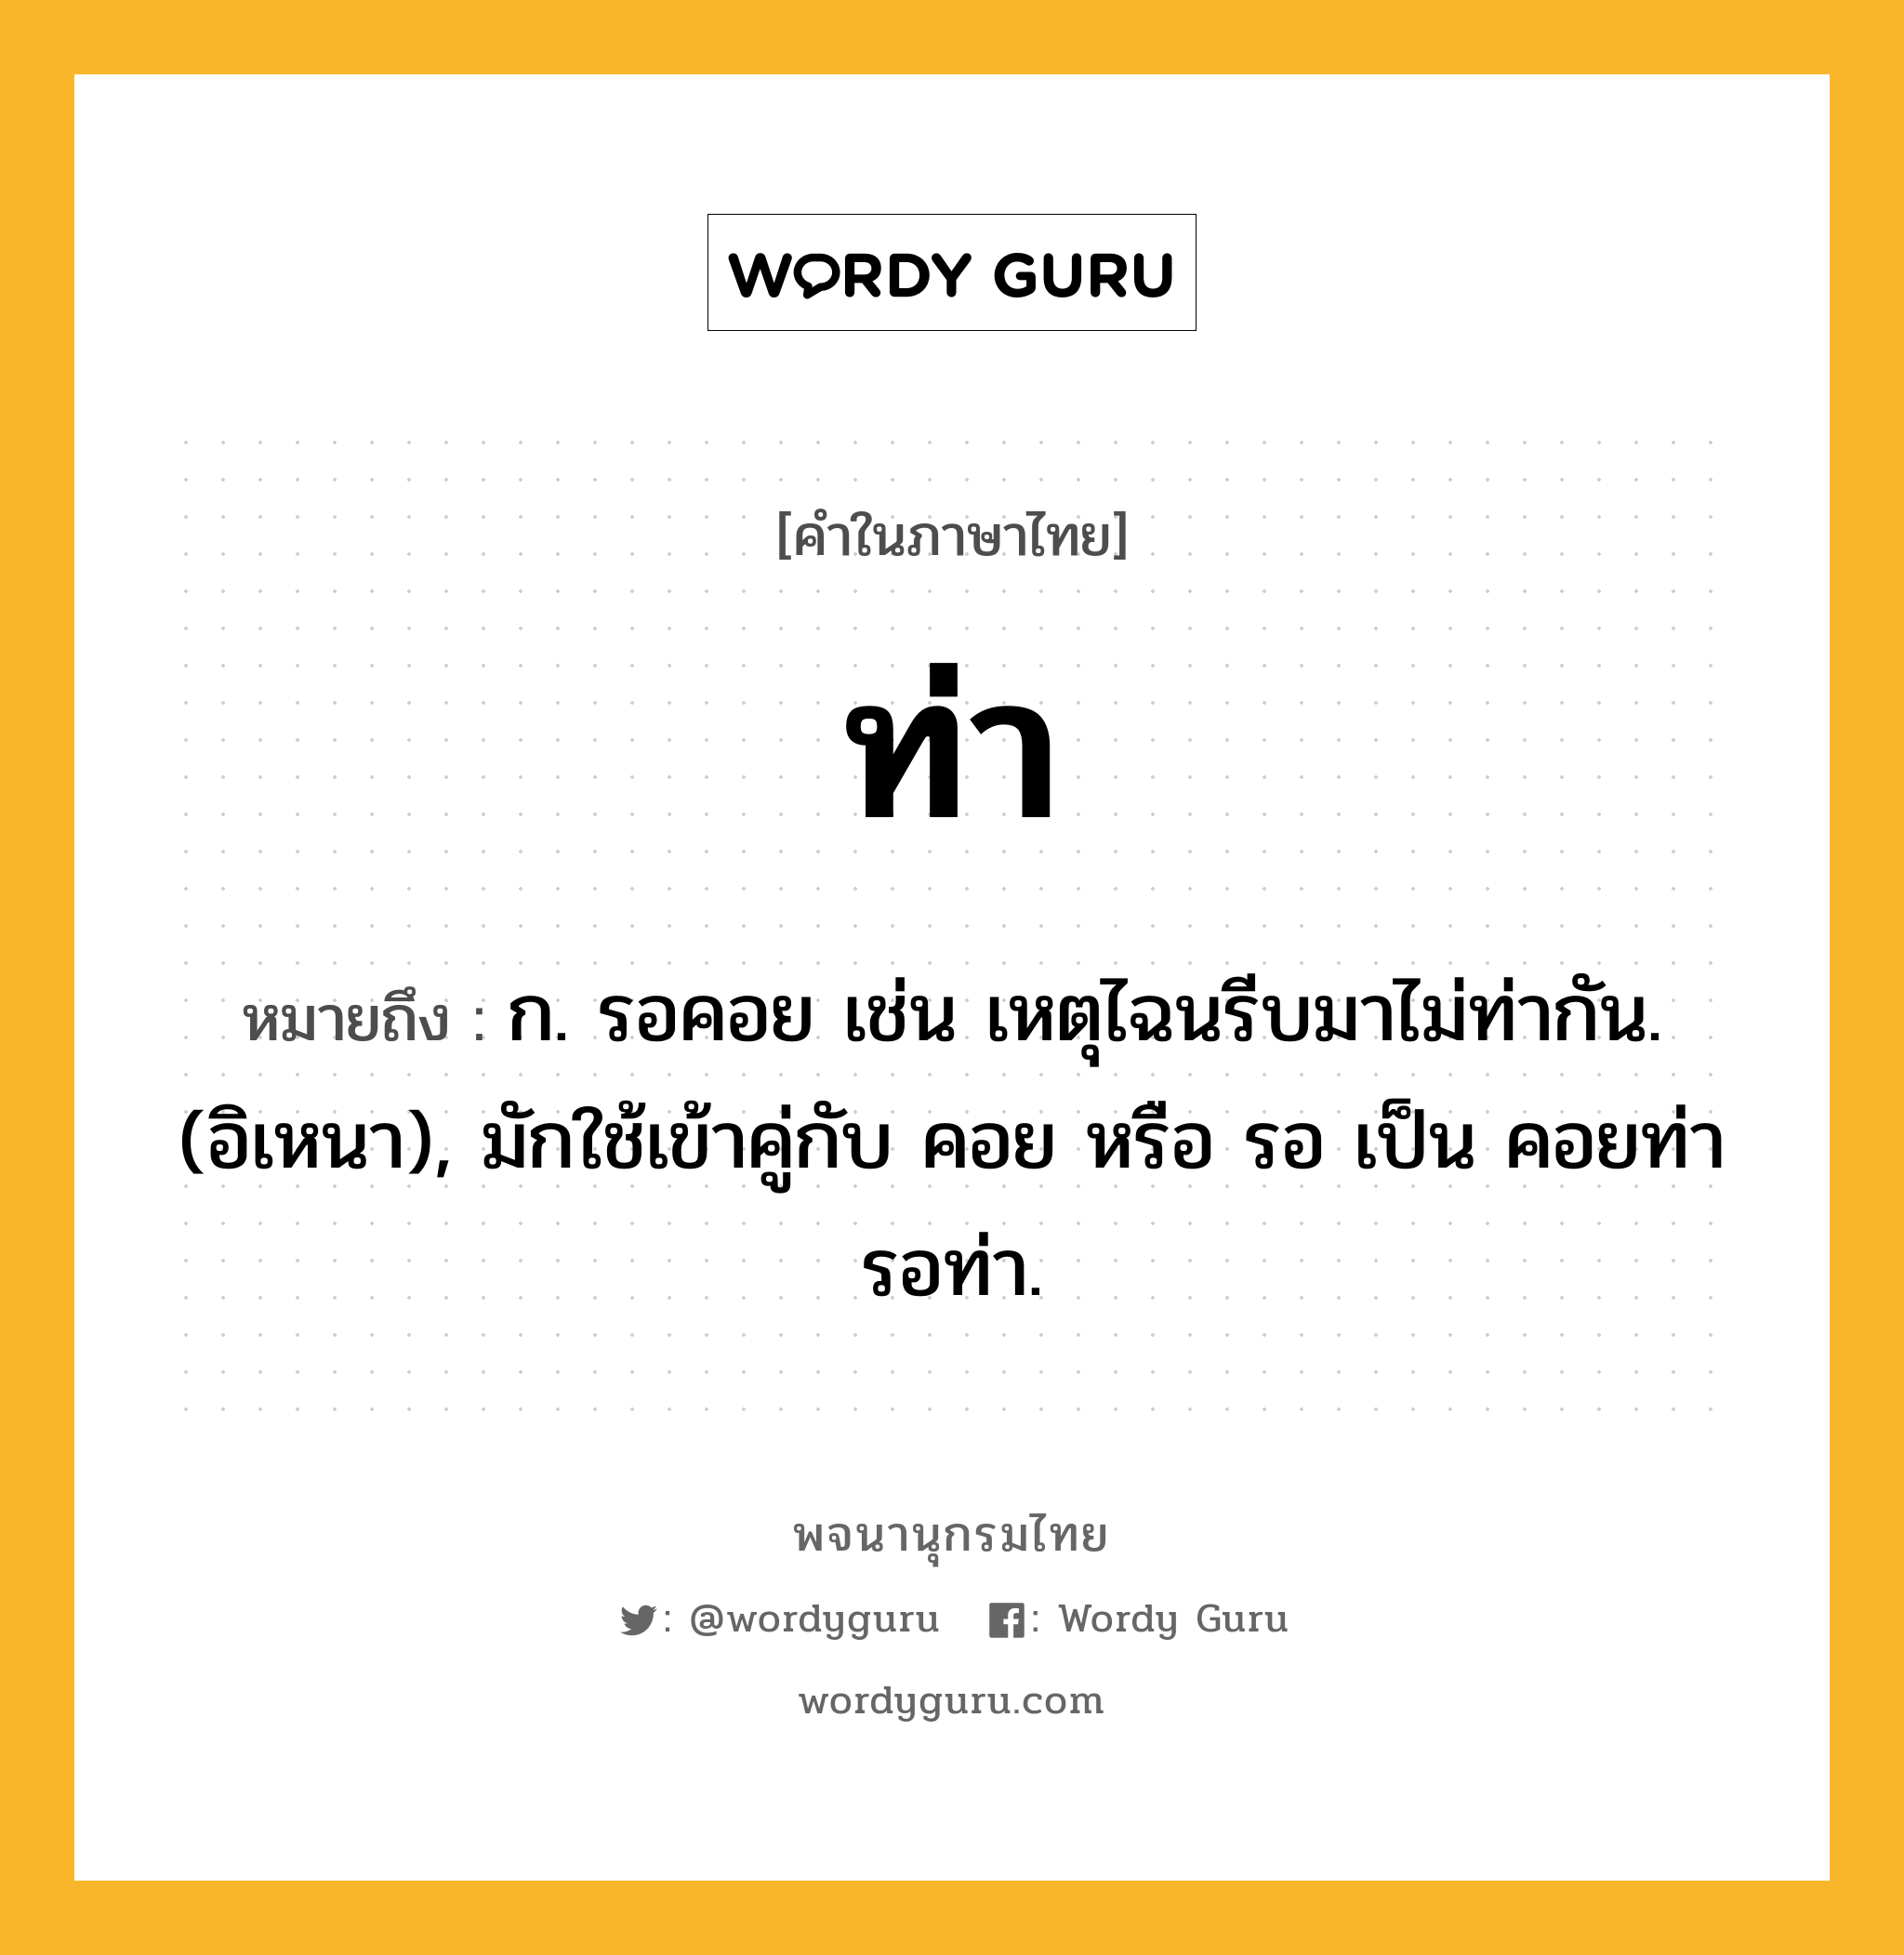 ท่า หมายถึงอะไร?, คำในภาษาไทย ท่า หมายถึง ก. รอคอย เช่น เหตุไฉนรีบมาไม่ท่ากัน. (อิเหนา), มักใช้เข้าคู่กับ คอย หรือ รอ เป็น คอยท่า รอท่า.